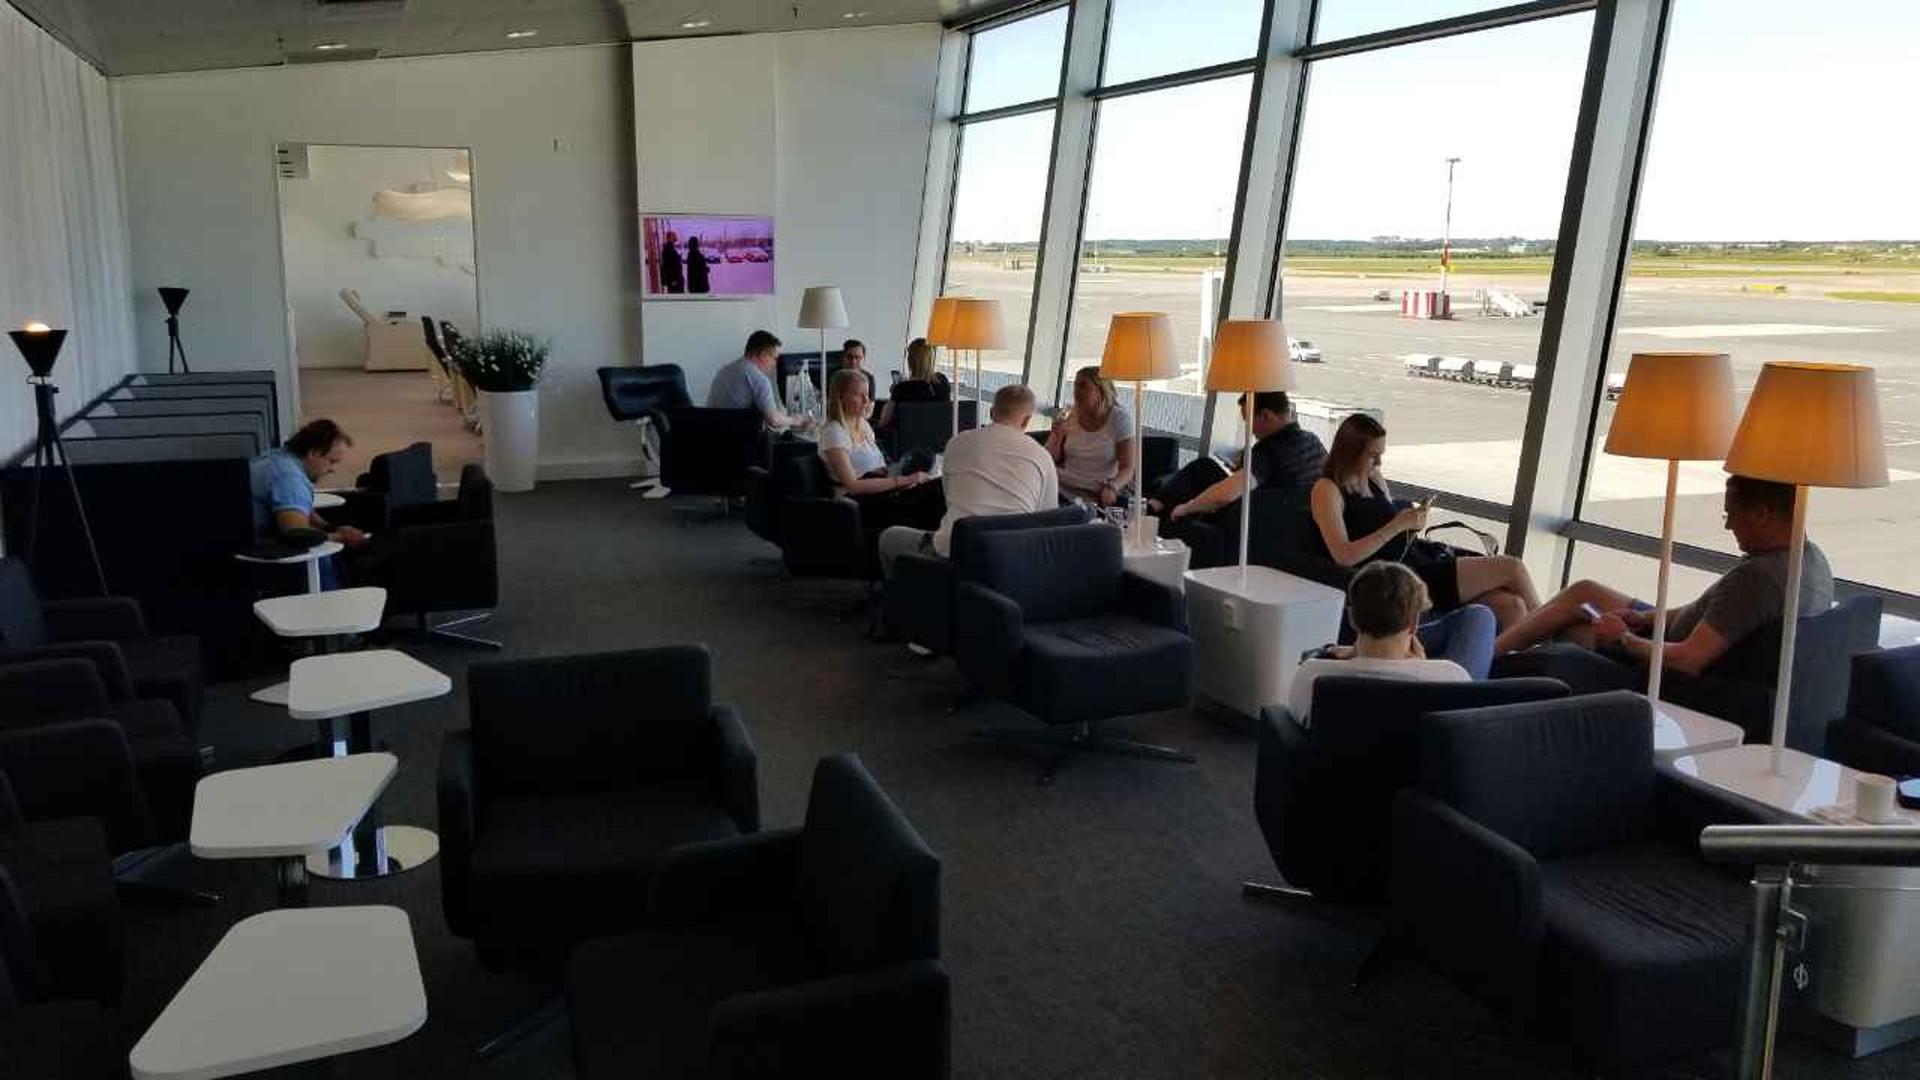 Finnair Lounge image 29 of 38